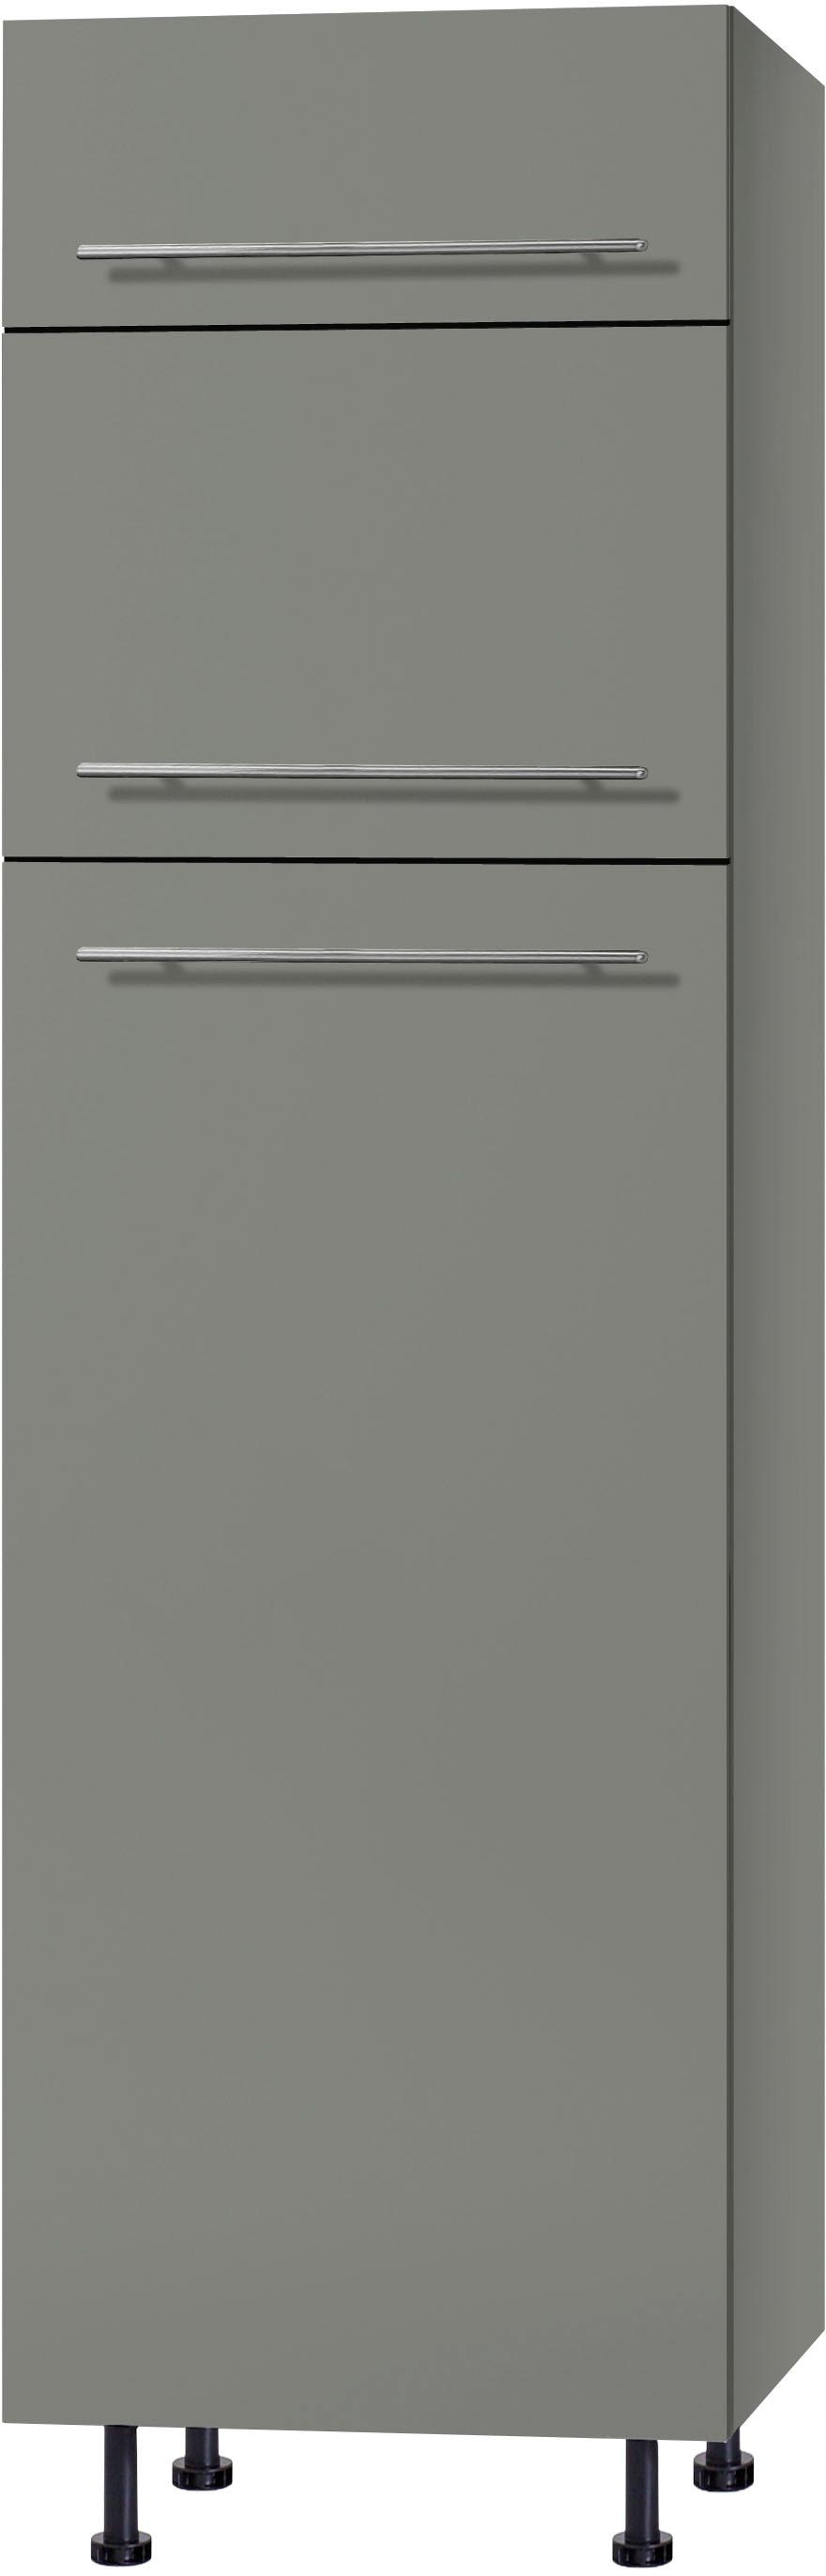 OPTIFIT Kühlumbauschrank »Bern«, 60 cm breit, 212 cm hoch, mit höhenverstellbaren Stellfüßen